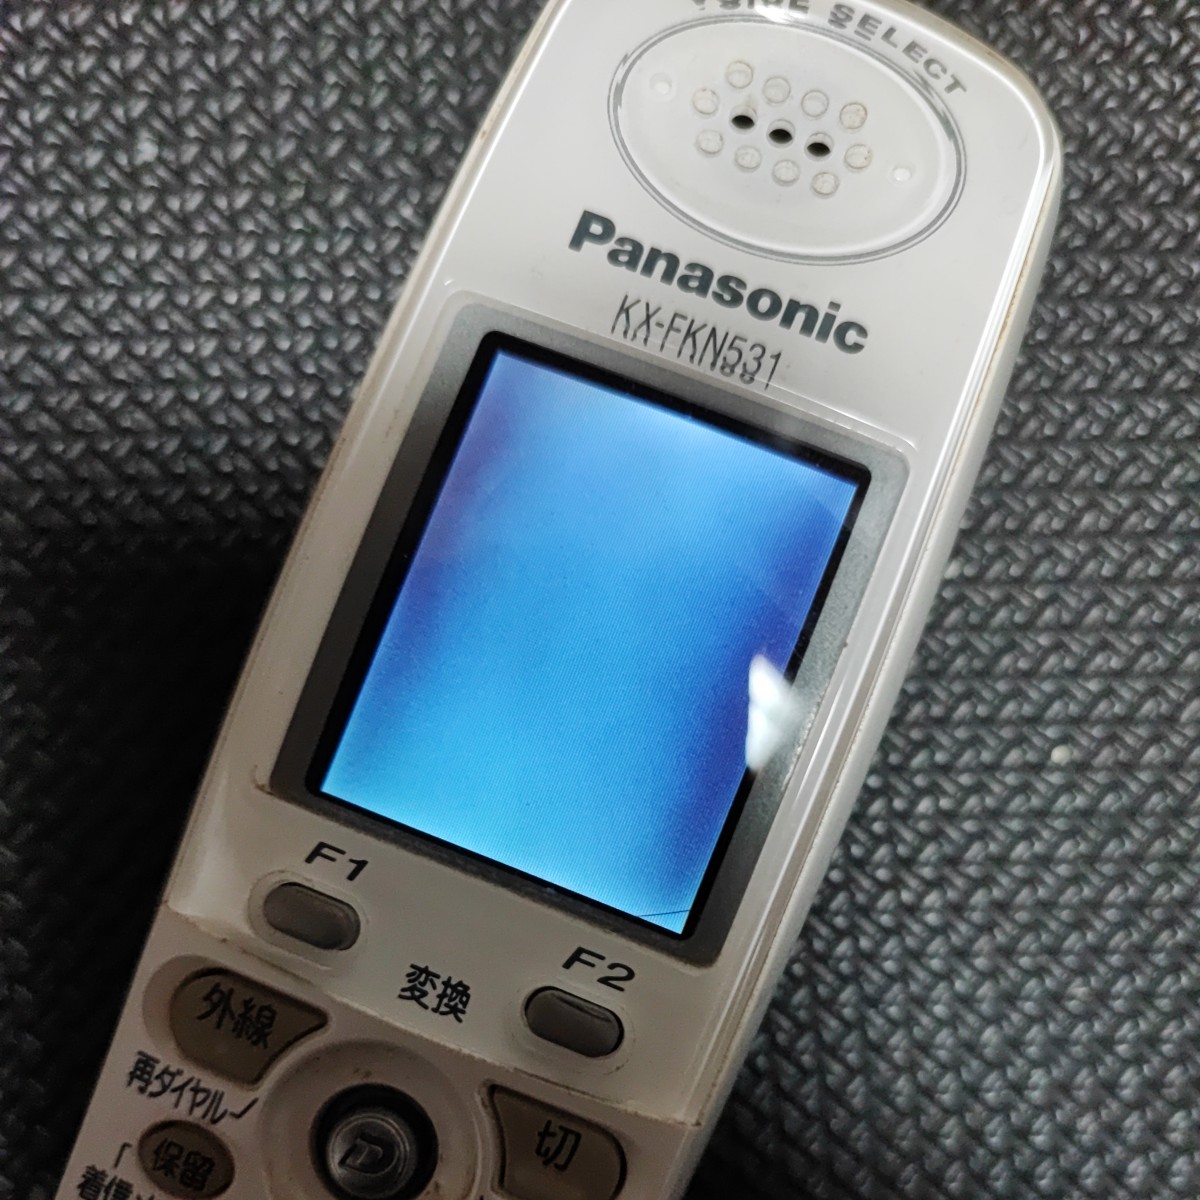 Panasonic パナソニック 子機 コードレス 電話機 ジャンク バッテリーNG 起動しない KX-FKN531_画像5